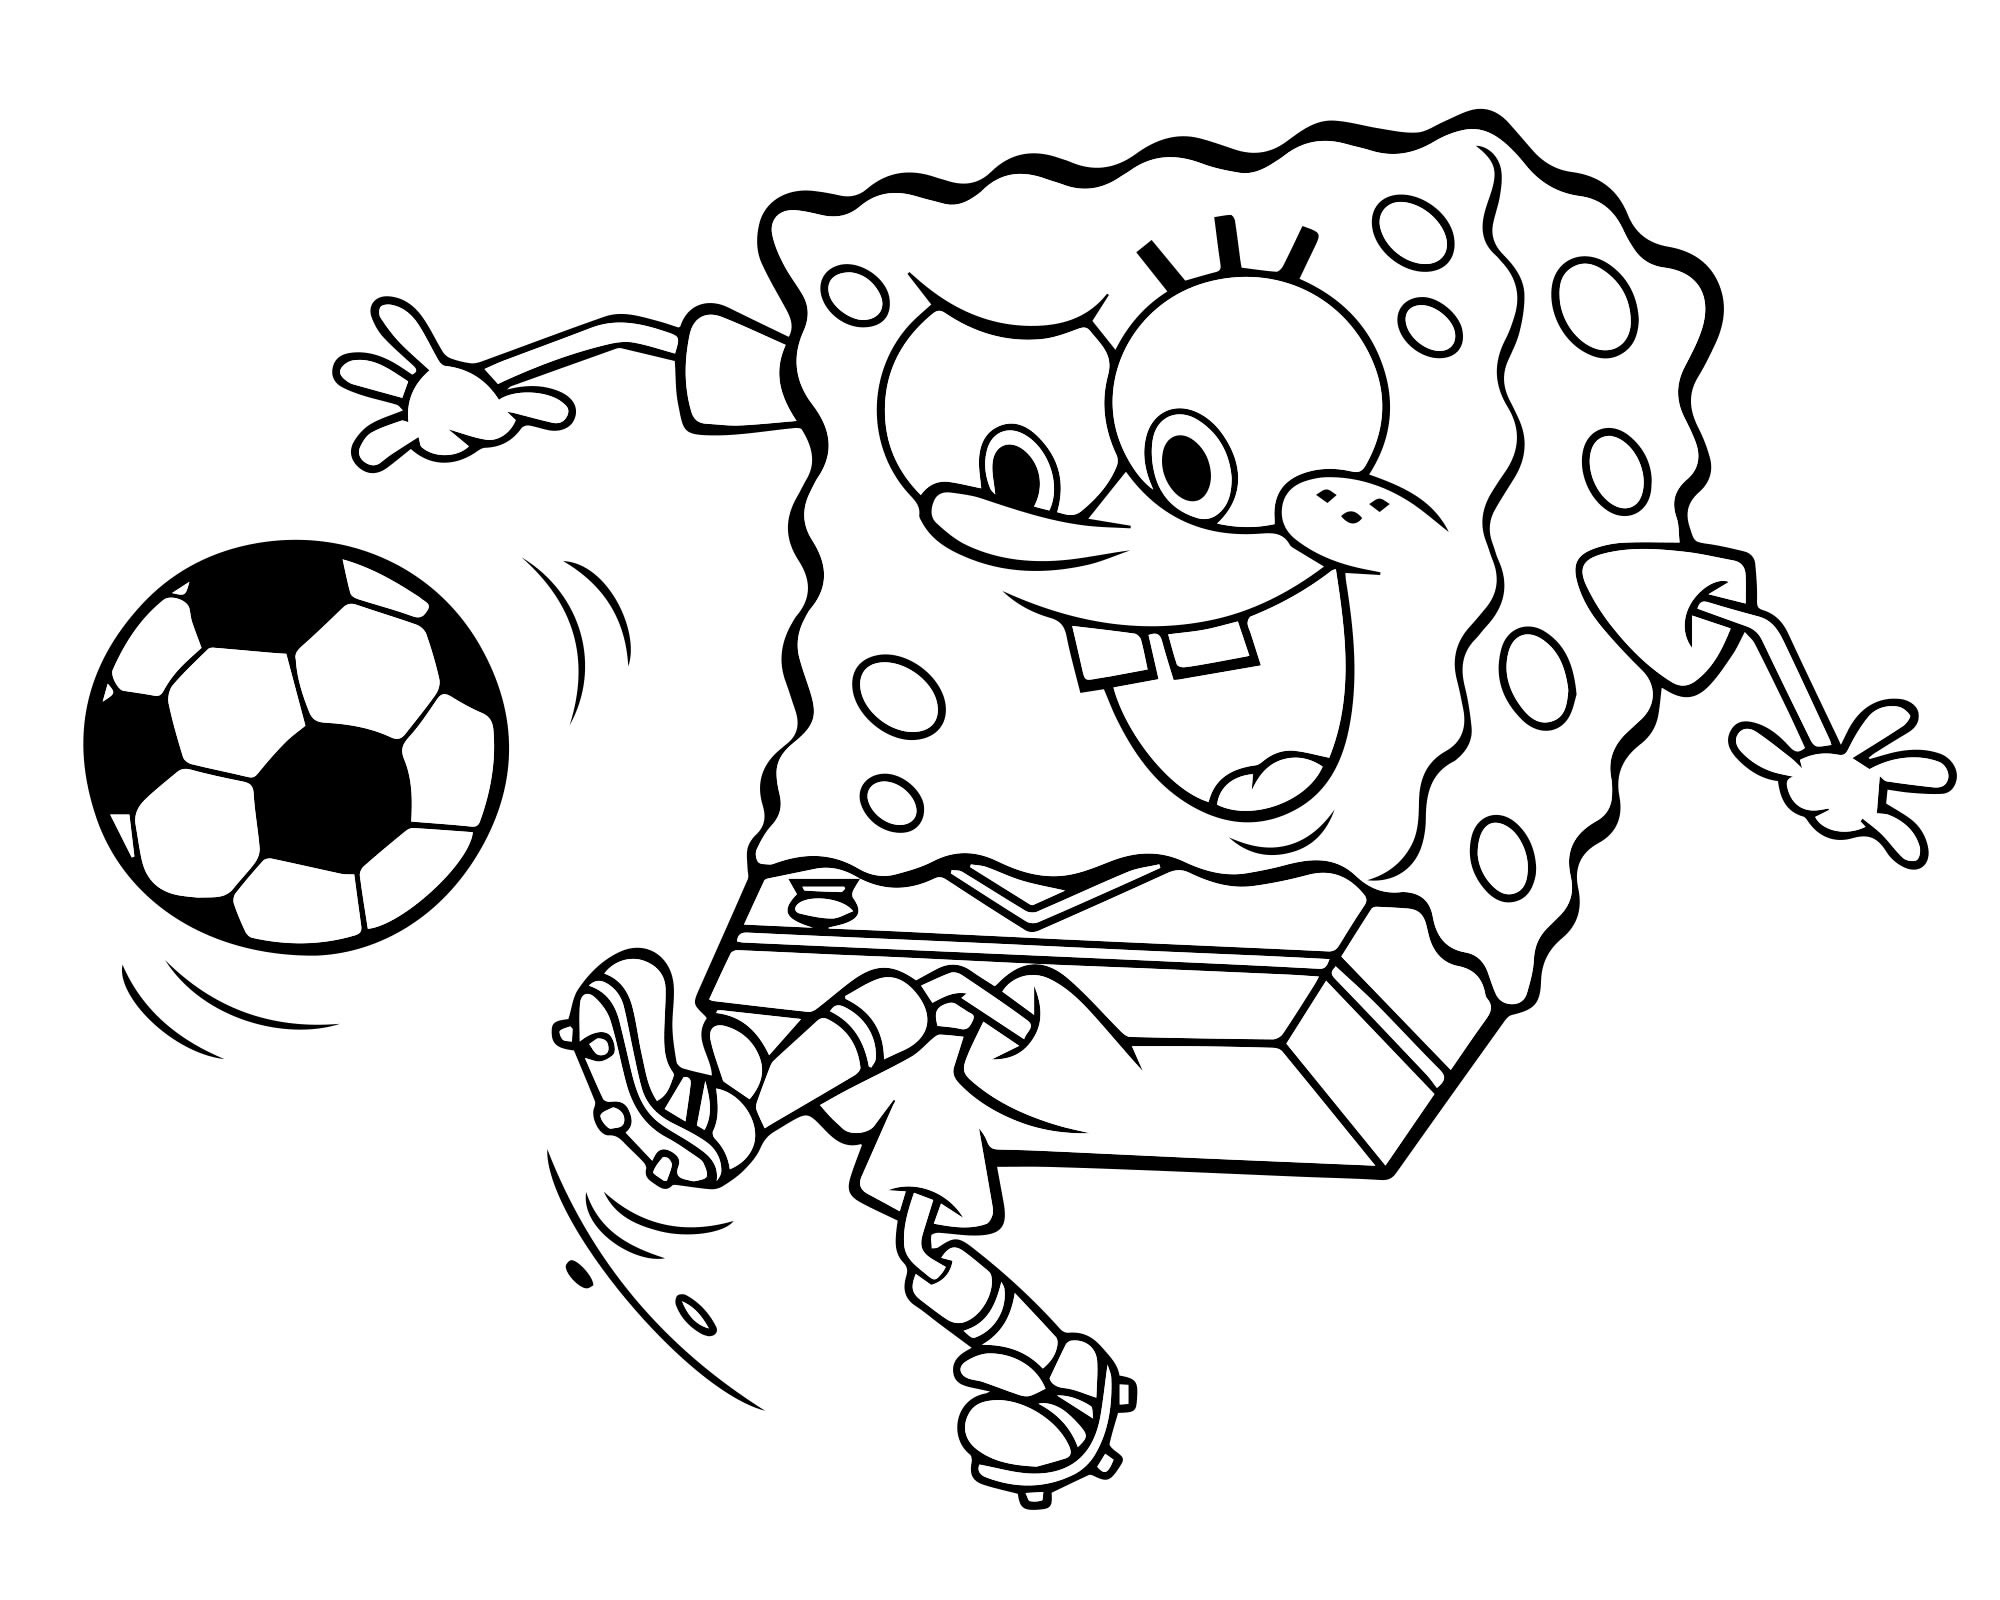 Картинка мальчик играет в футбол раскраска